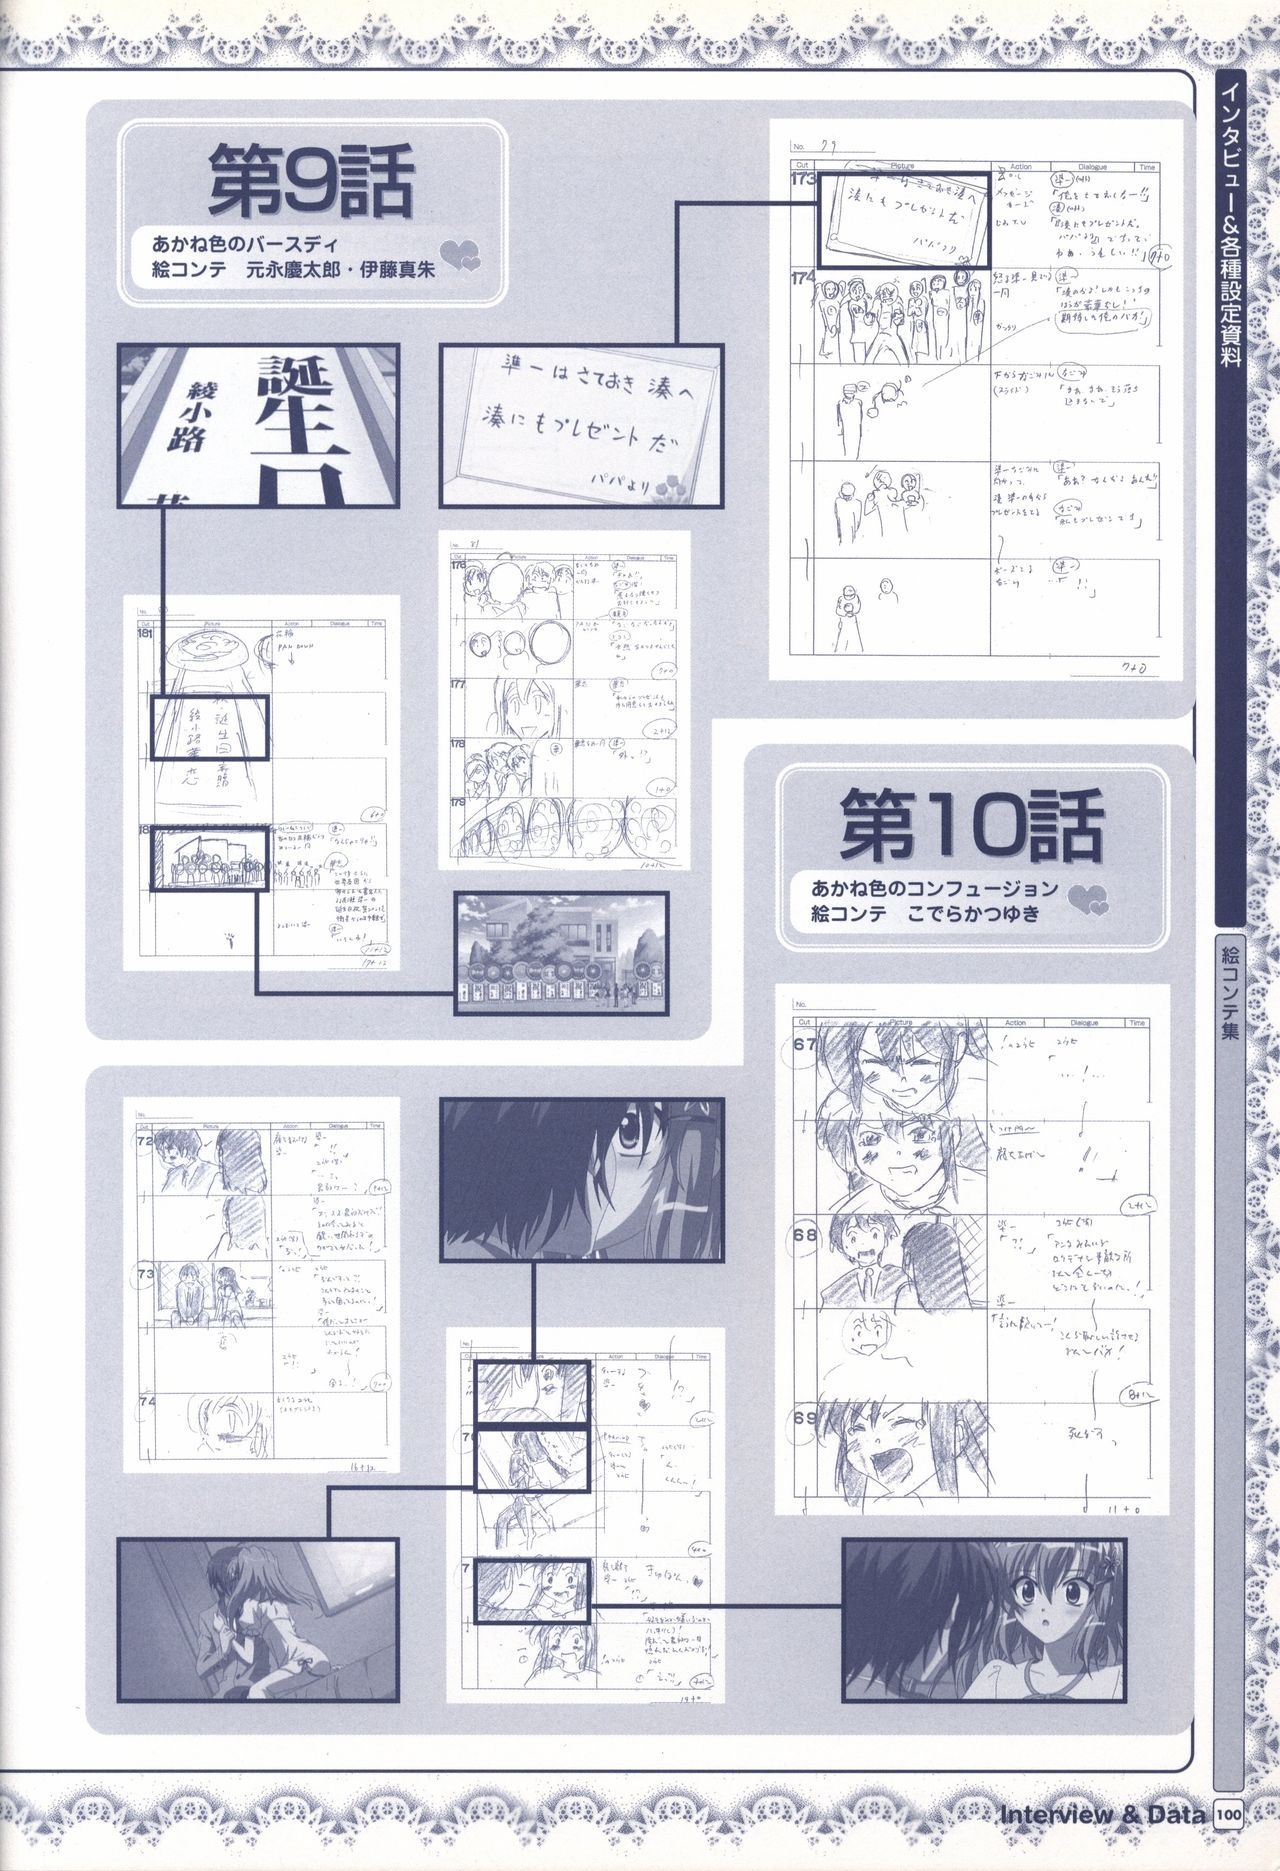 TV ANIME Akaneiro ni Somaru Saka Visual Guide Book 100